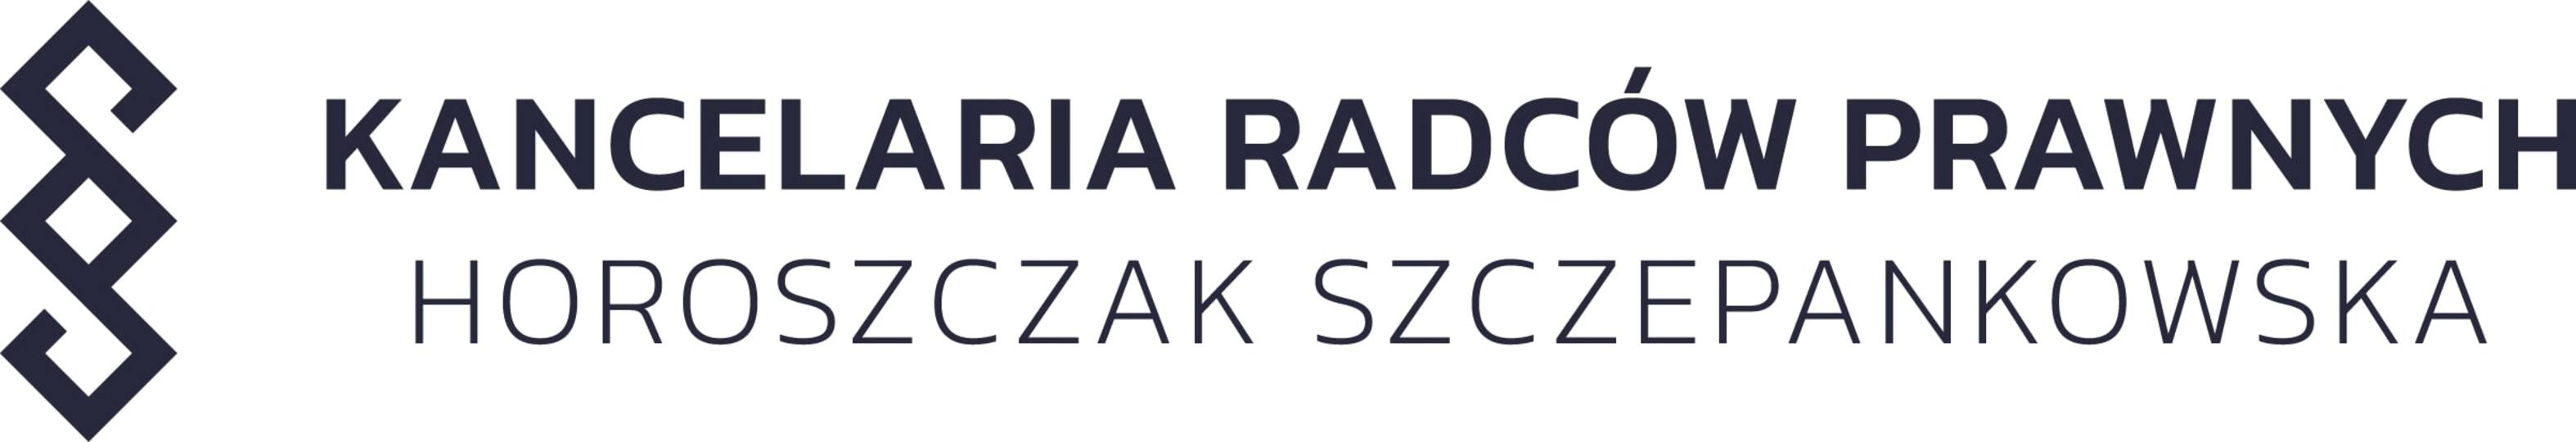 Kancelaria Radców Prawnych Horoszczak Szczepankowska